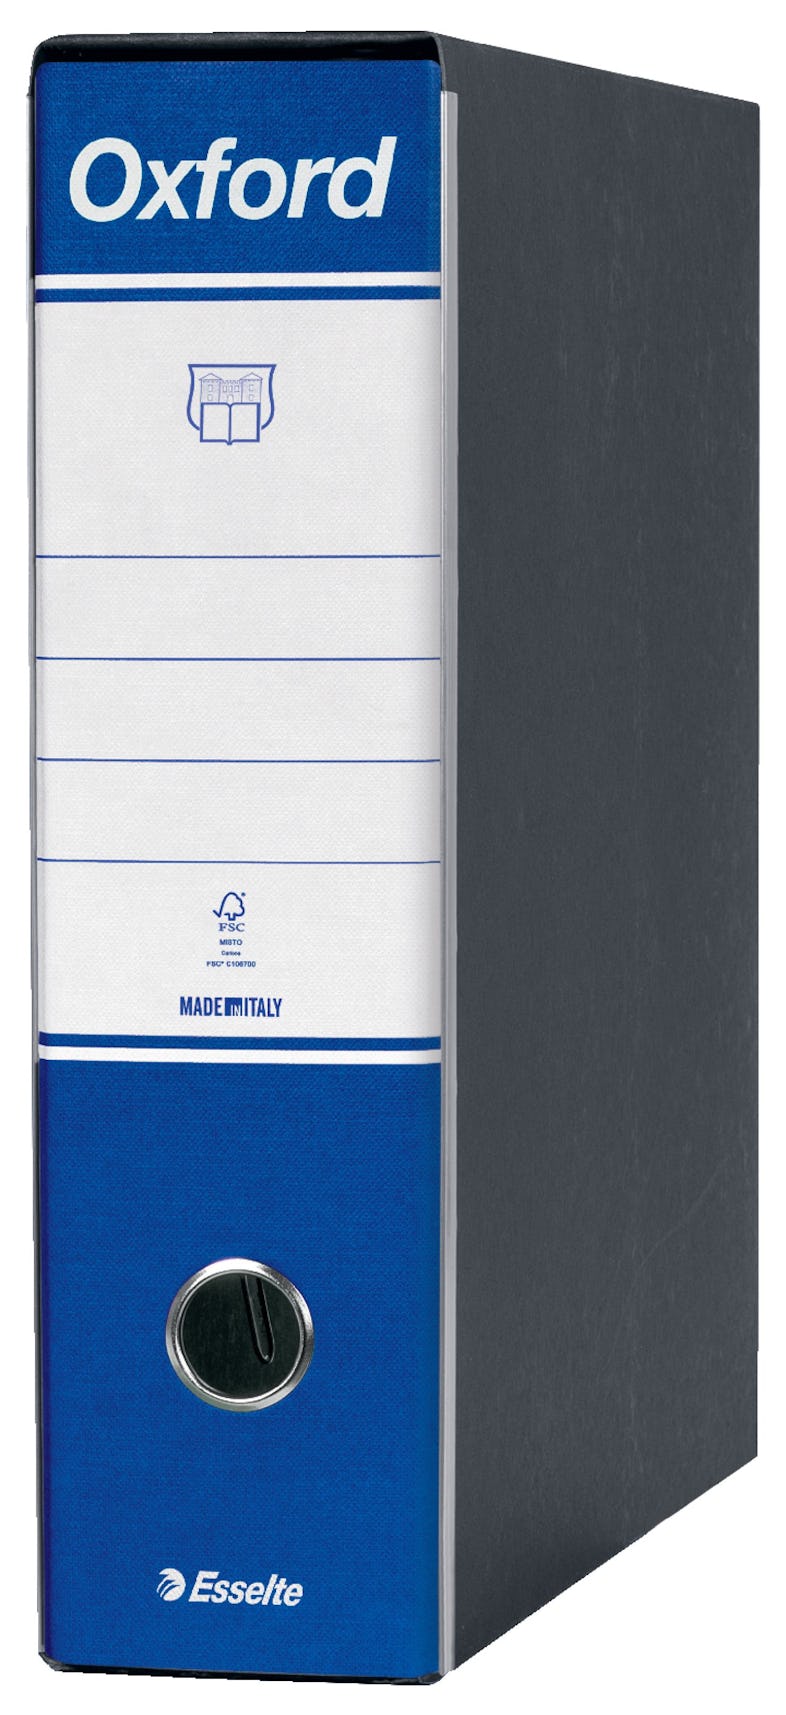 Esselte G83 OXFORD Raccoglitore con Meccanismo N.1 in Formato Commerciale  con Dorso da 8 cm – Blu, 6 pezzi, 390783050